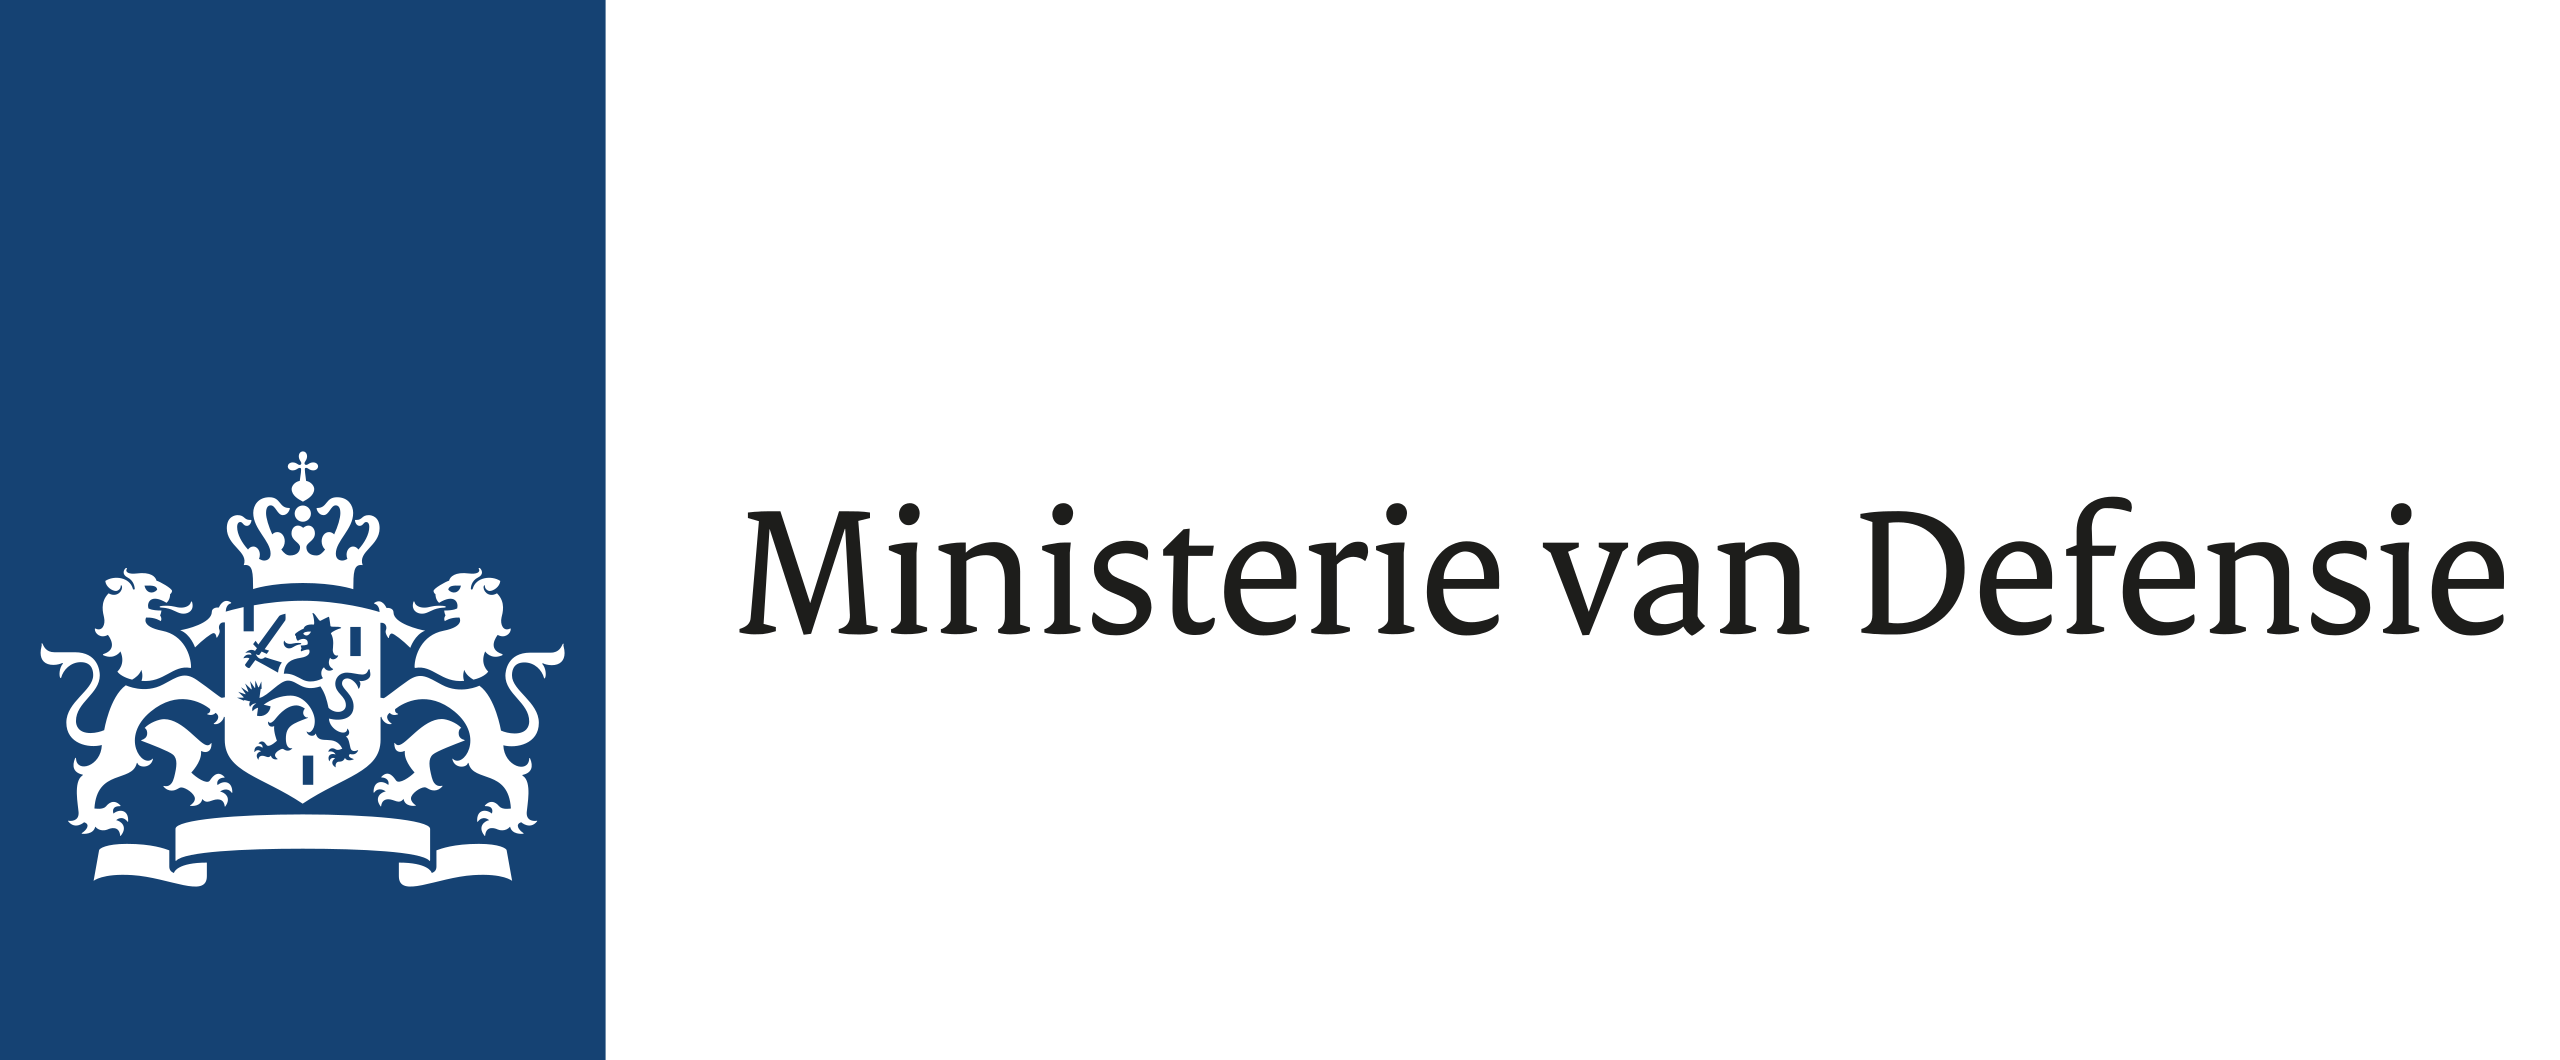 2560px-Logo_ministerie_van_defensie.svg